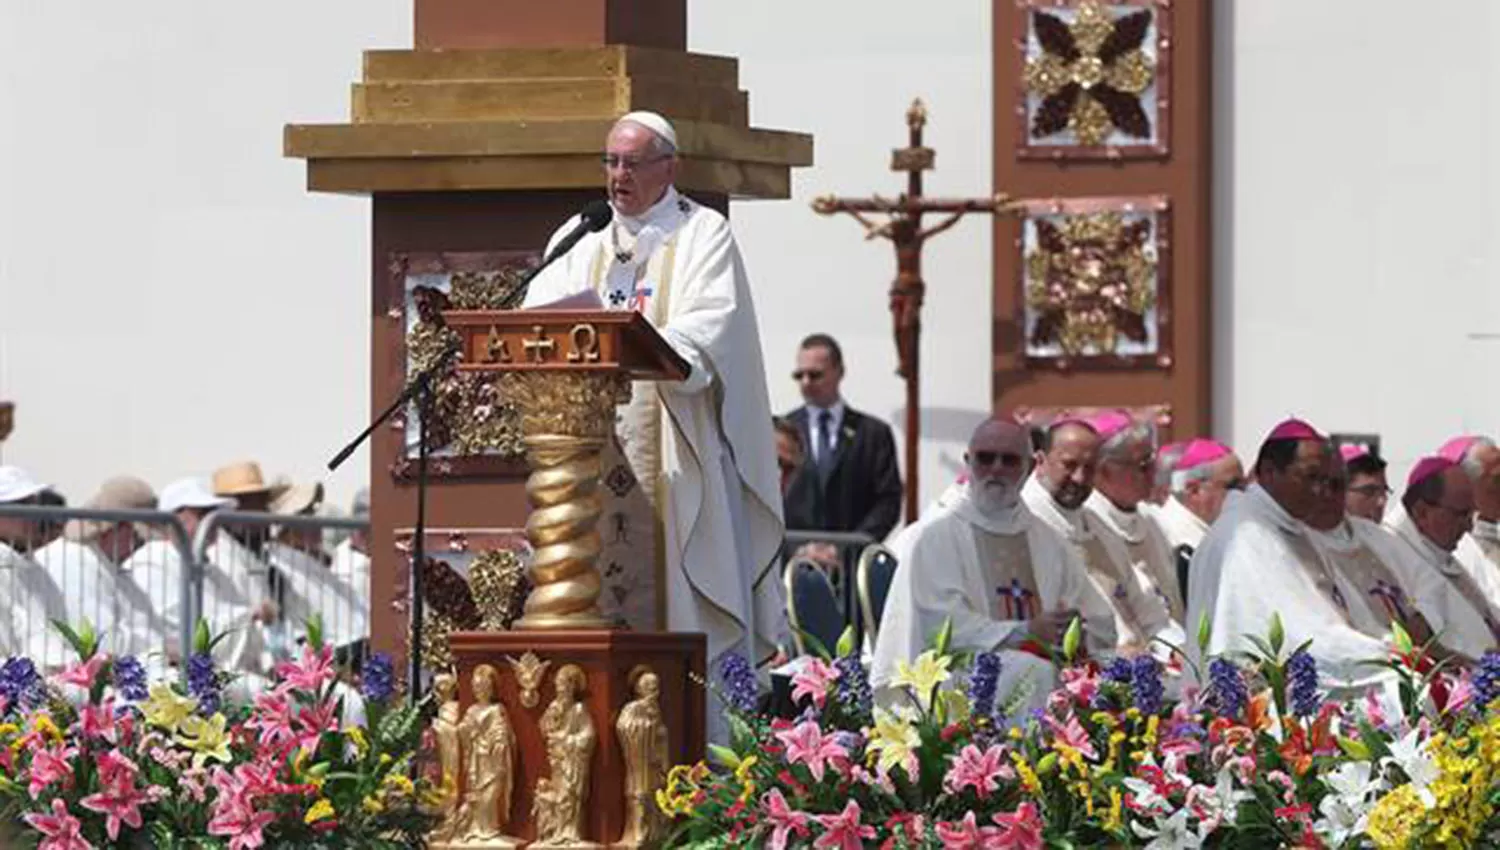 El papa Francisco encabezó la Misa de Nuestra Señora del Carmen, este mediodía, en Iquique. FOTO TOMADA DE LANACION.COM.AR

